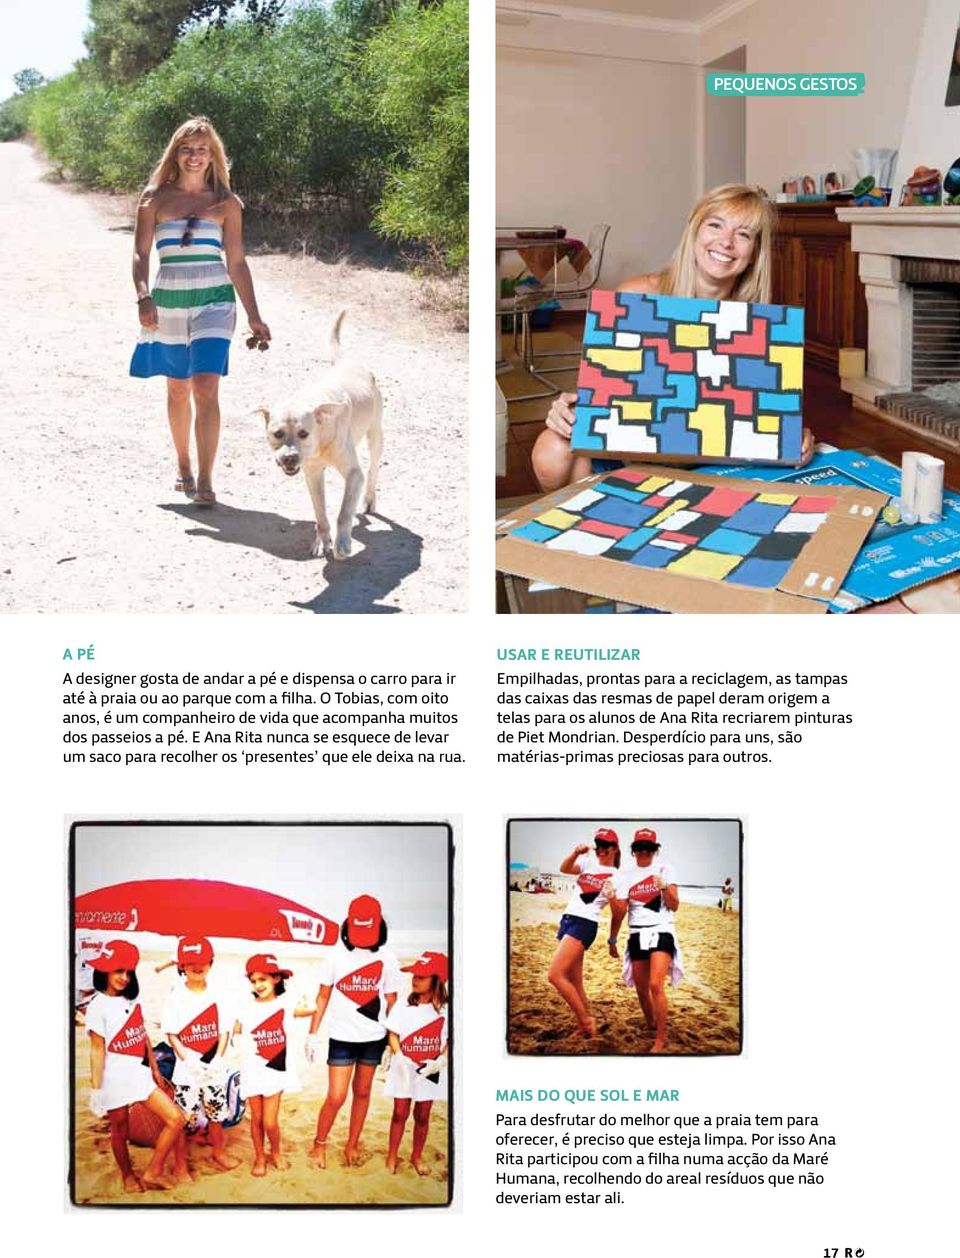 Usar e reutilizar Empilhadas, prontas para a reciclagem, as tampas das caixas das resmas de papel deram origem a telas para os alunos de Ana Rita recriarem pinturas de Piet Mondrian.